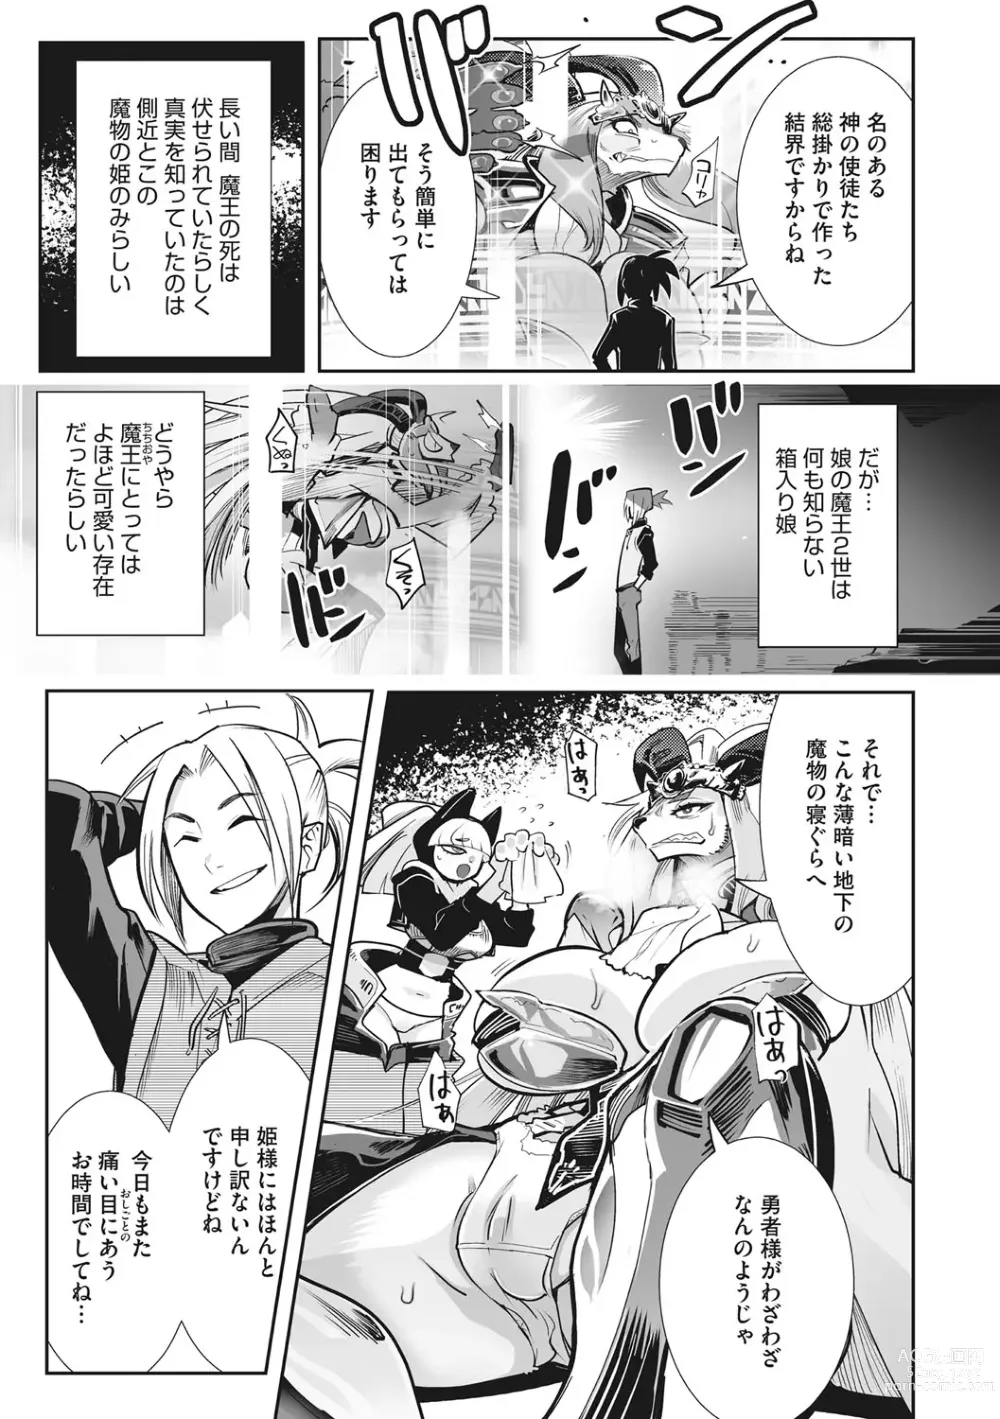 Page 8 of manga Kemono to Koishite Nani ga Warui!